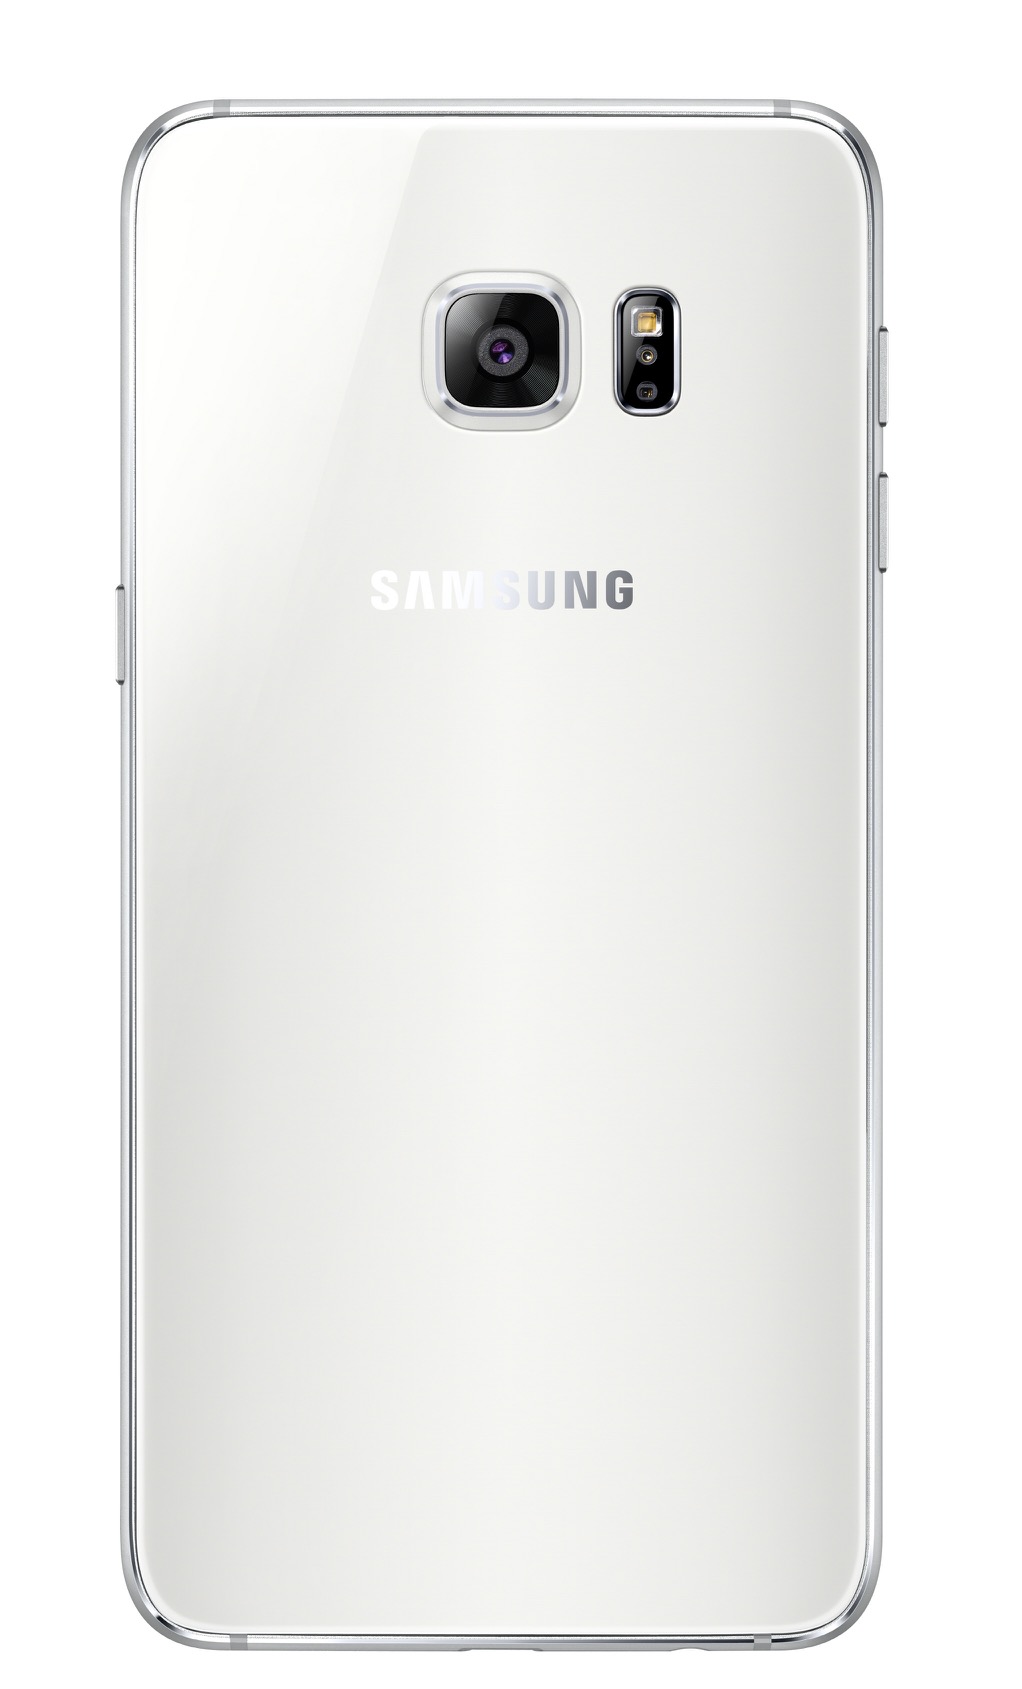 サムスン、「Galaxy S6 edge+」と「Galaxy Note 5」を発表――5.7インチ、メタルボディのファブレット